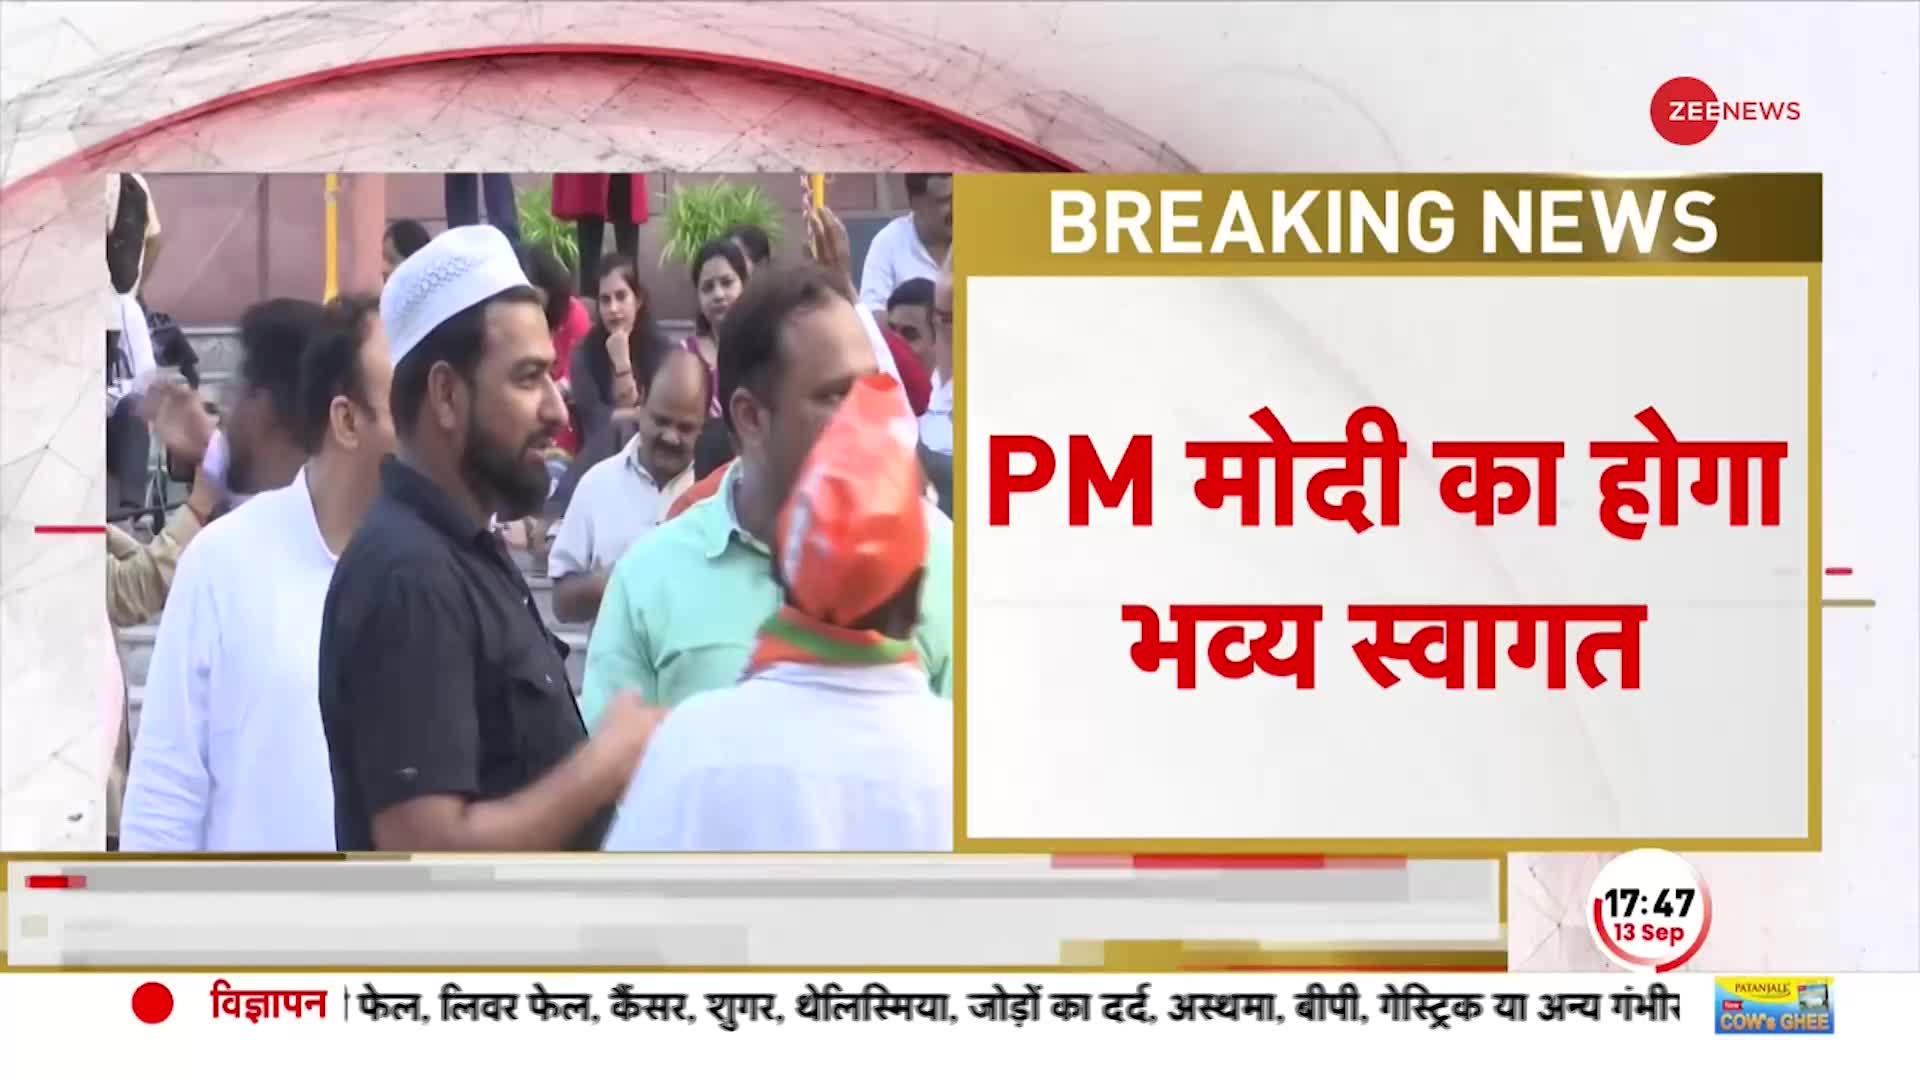 Breaking News: BJP मुख्यालय में प्रधानमंत्री मोदी के जोरदार स्वागत की तैयारी, कार्यकर्ताओं की भीड़